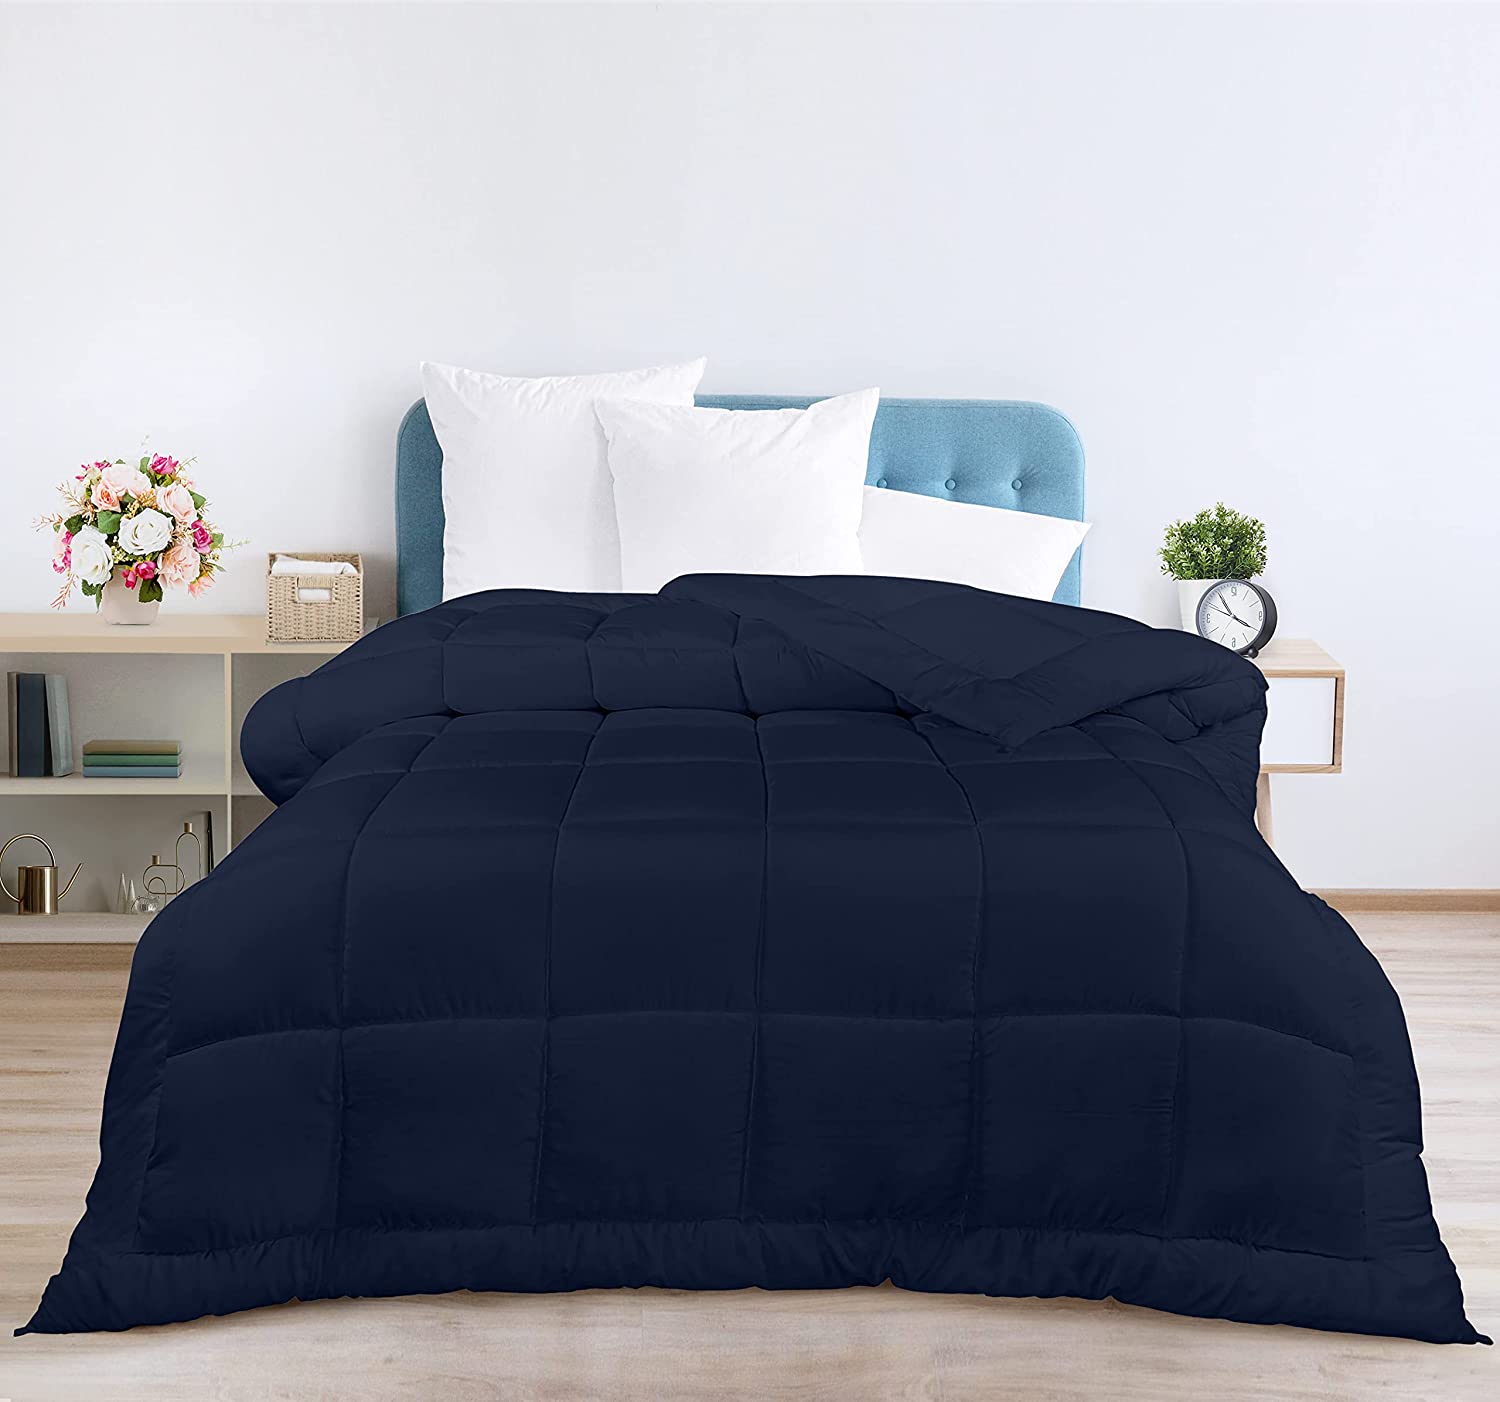 Utopia Bedding Comforter Duvet Insert - Quilted Comforter with